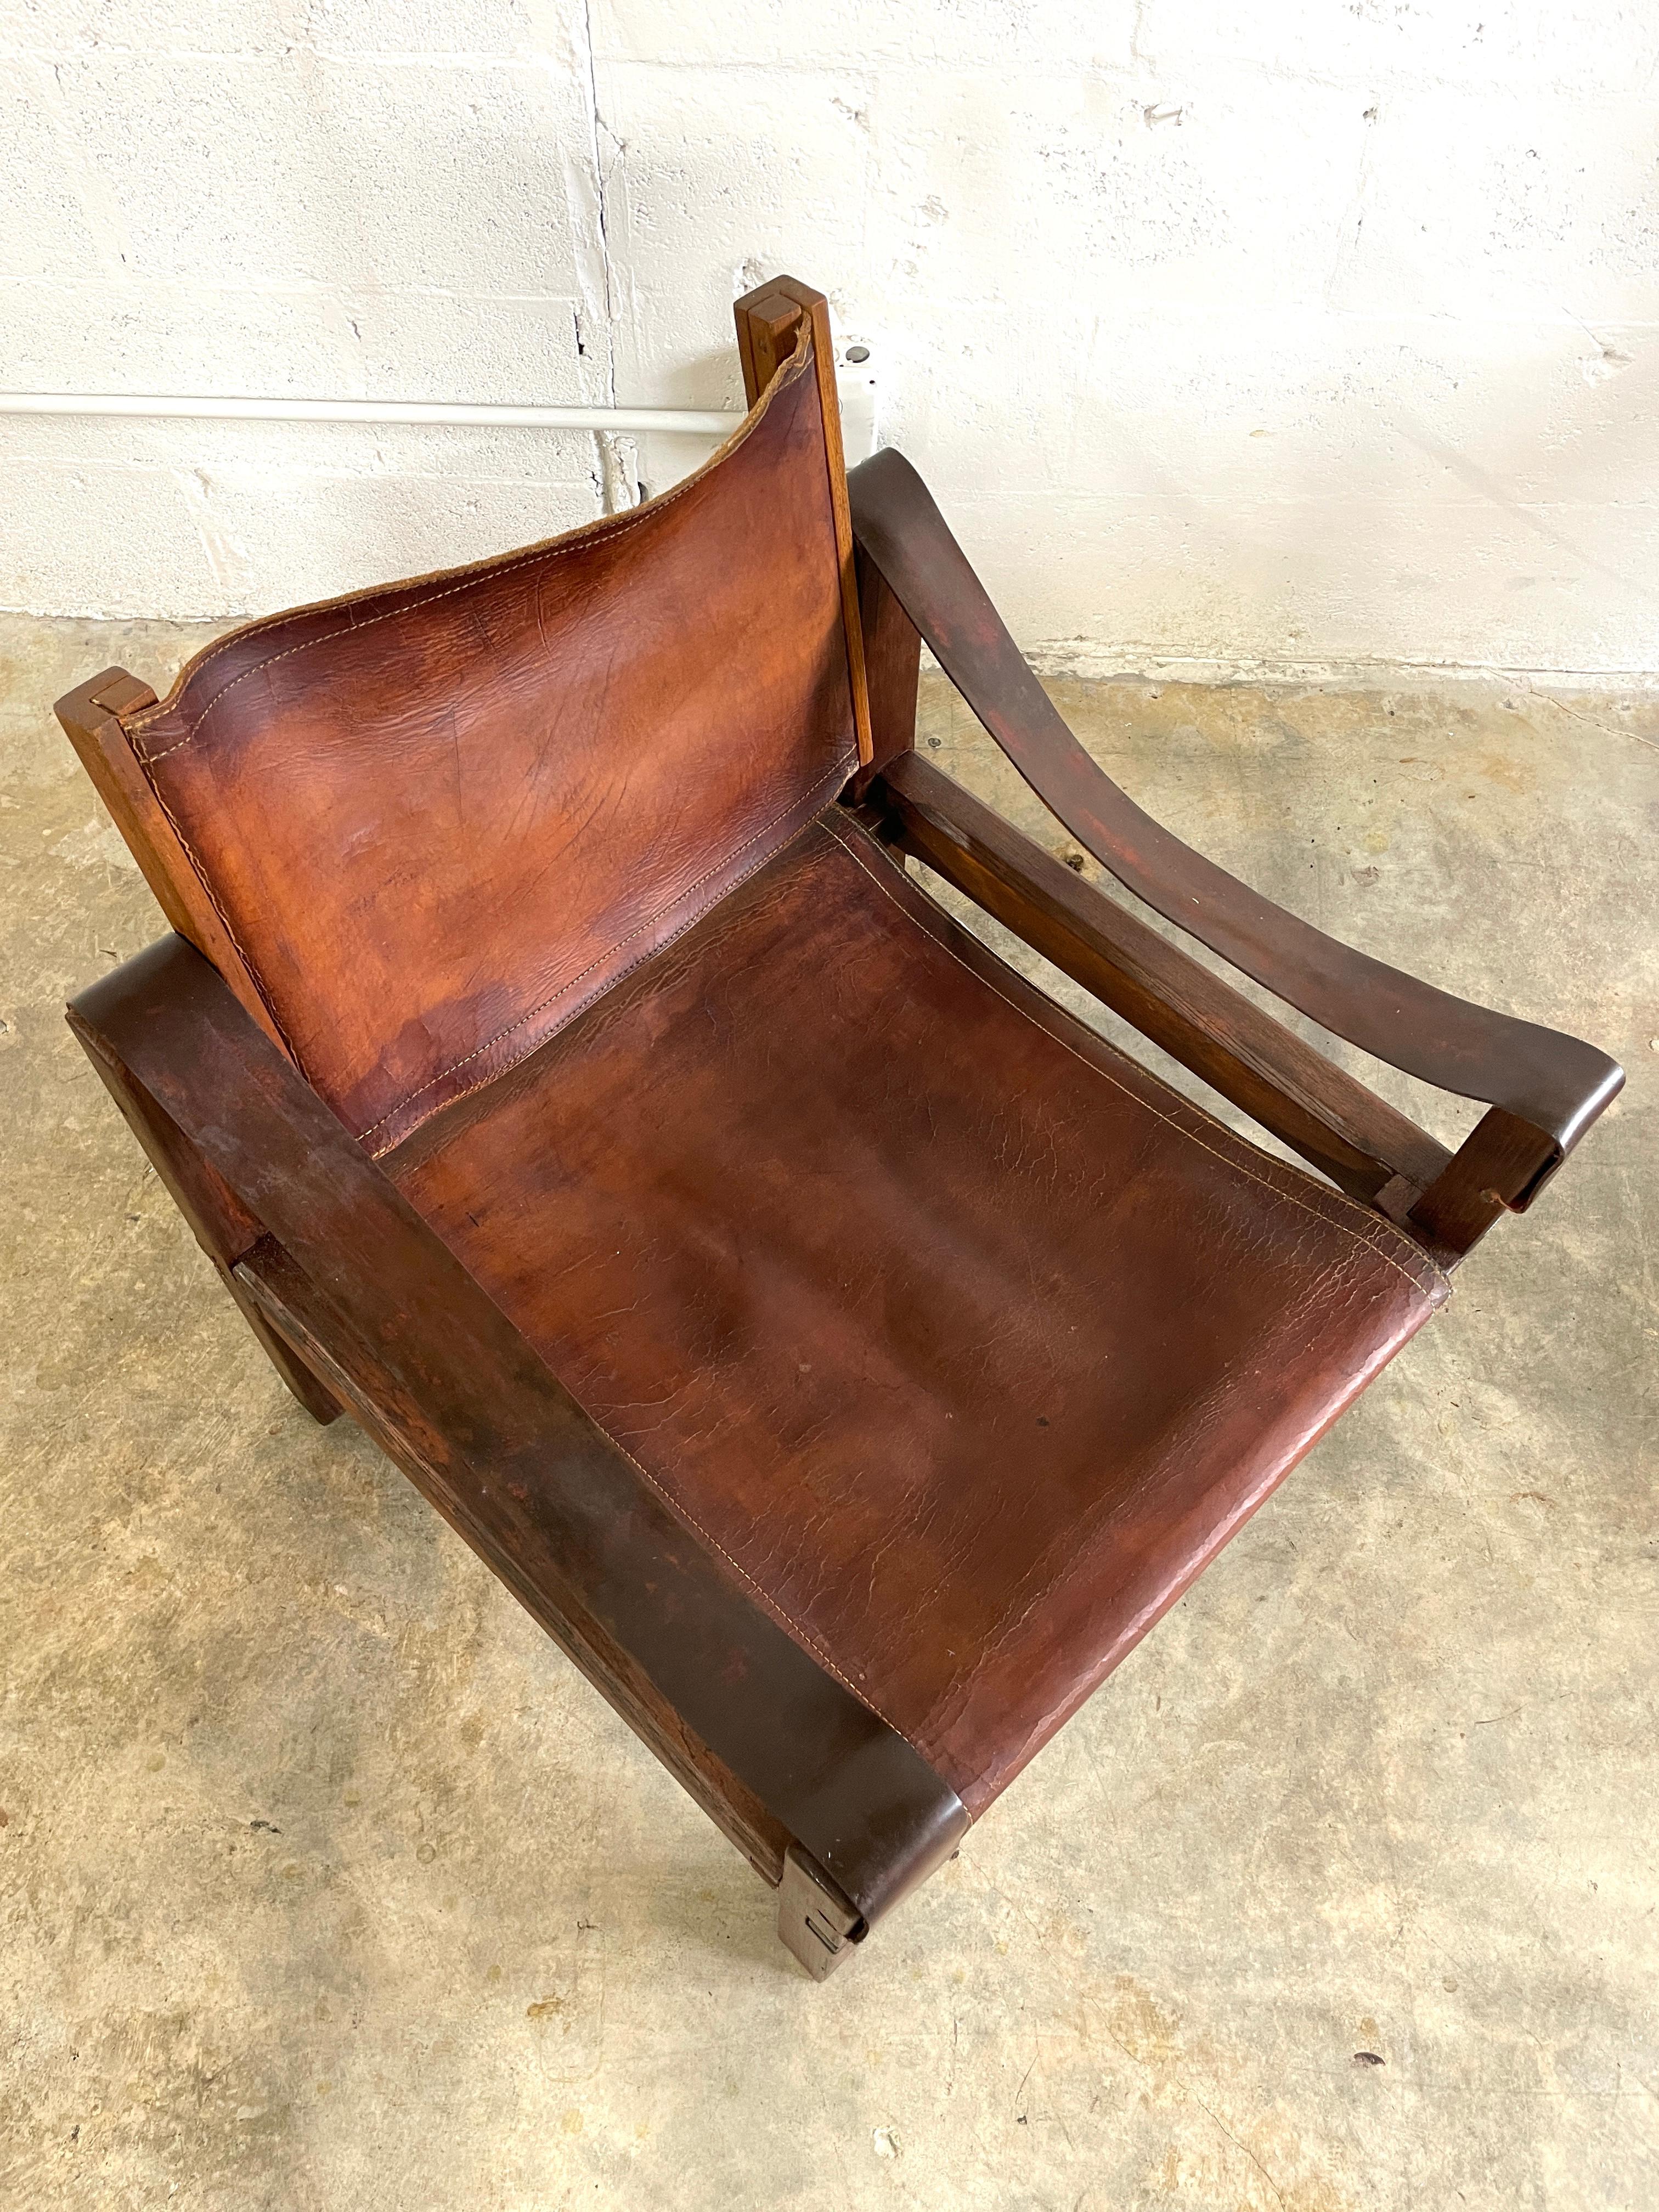 Ikonischer Stuhl Pierre Chapo S10. Frankreich 1960er Jahre. Original-Sattelleder und verkauft Ulmenholz. Dieses Modell wurde zu einem der führenden Entwürfe in seiner Galerie.